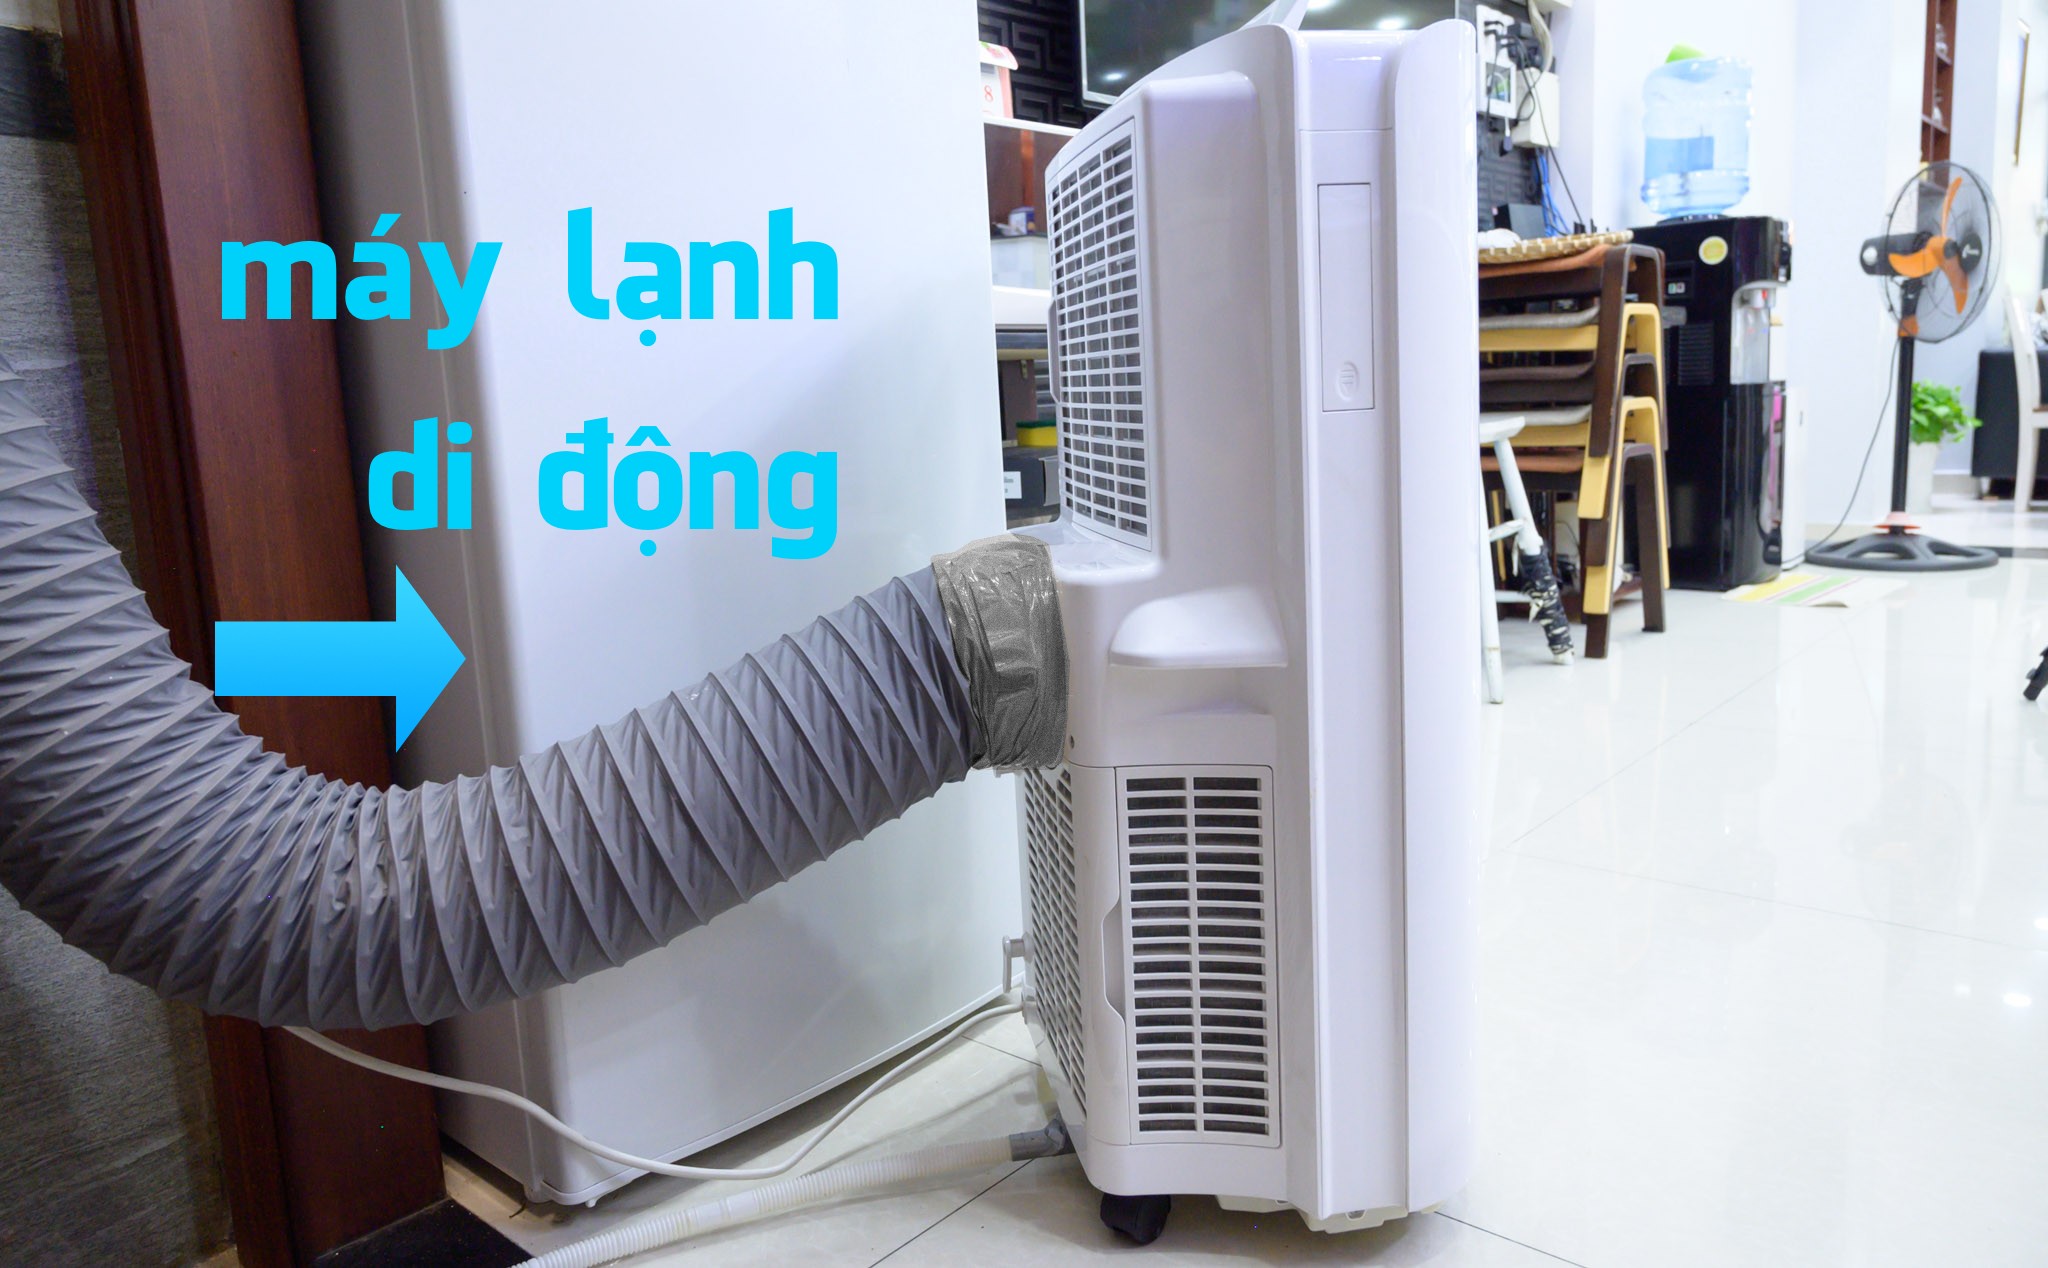 Chia sẻ thêm về máy lạnh di động mình đang dùng: Làm mát nhanh, phù hợp không gian mở, hơi ồn